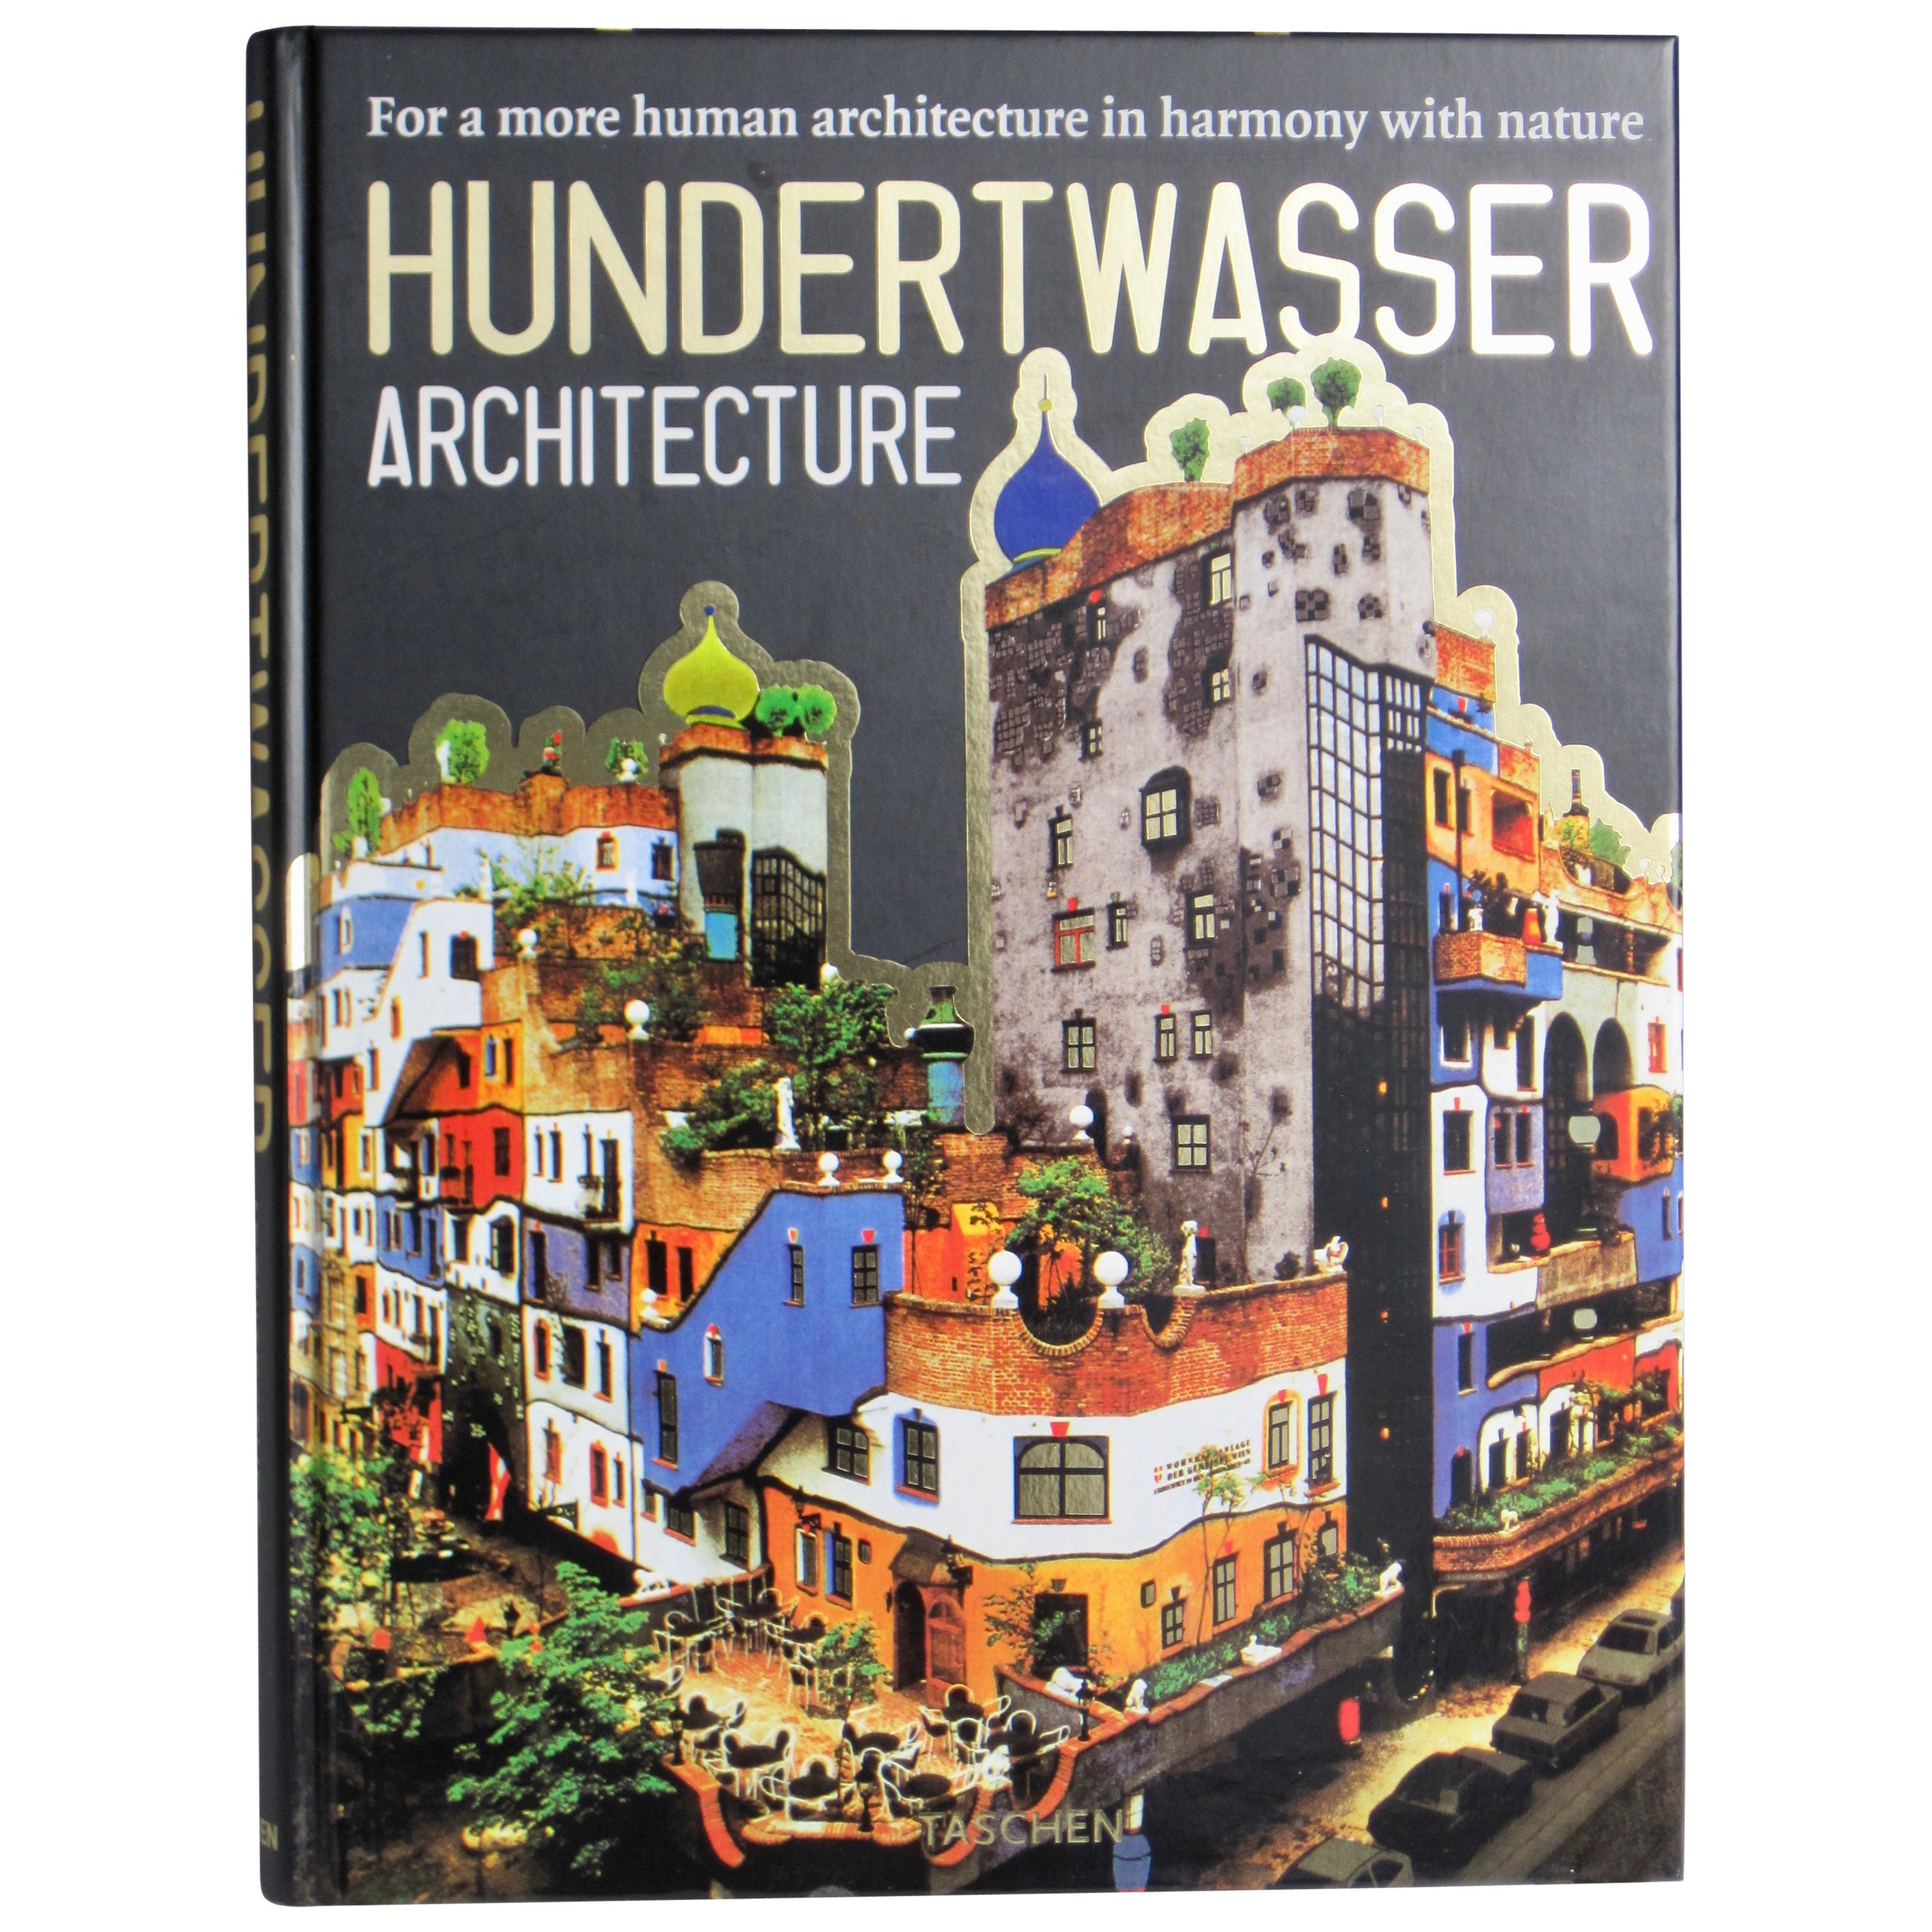 Taschen Hundertwasser Architecture Hardcover Coffee Table Book